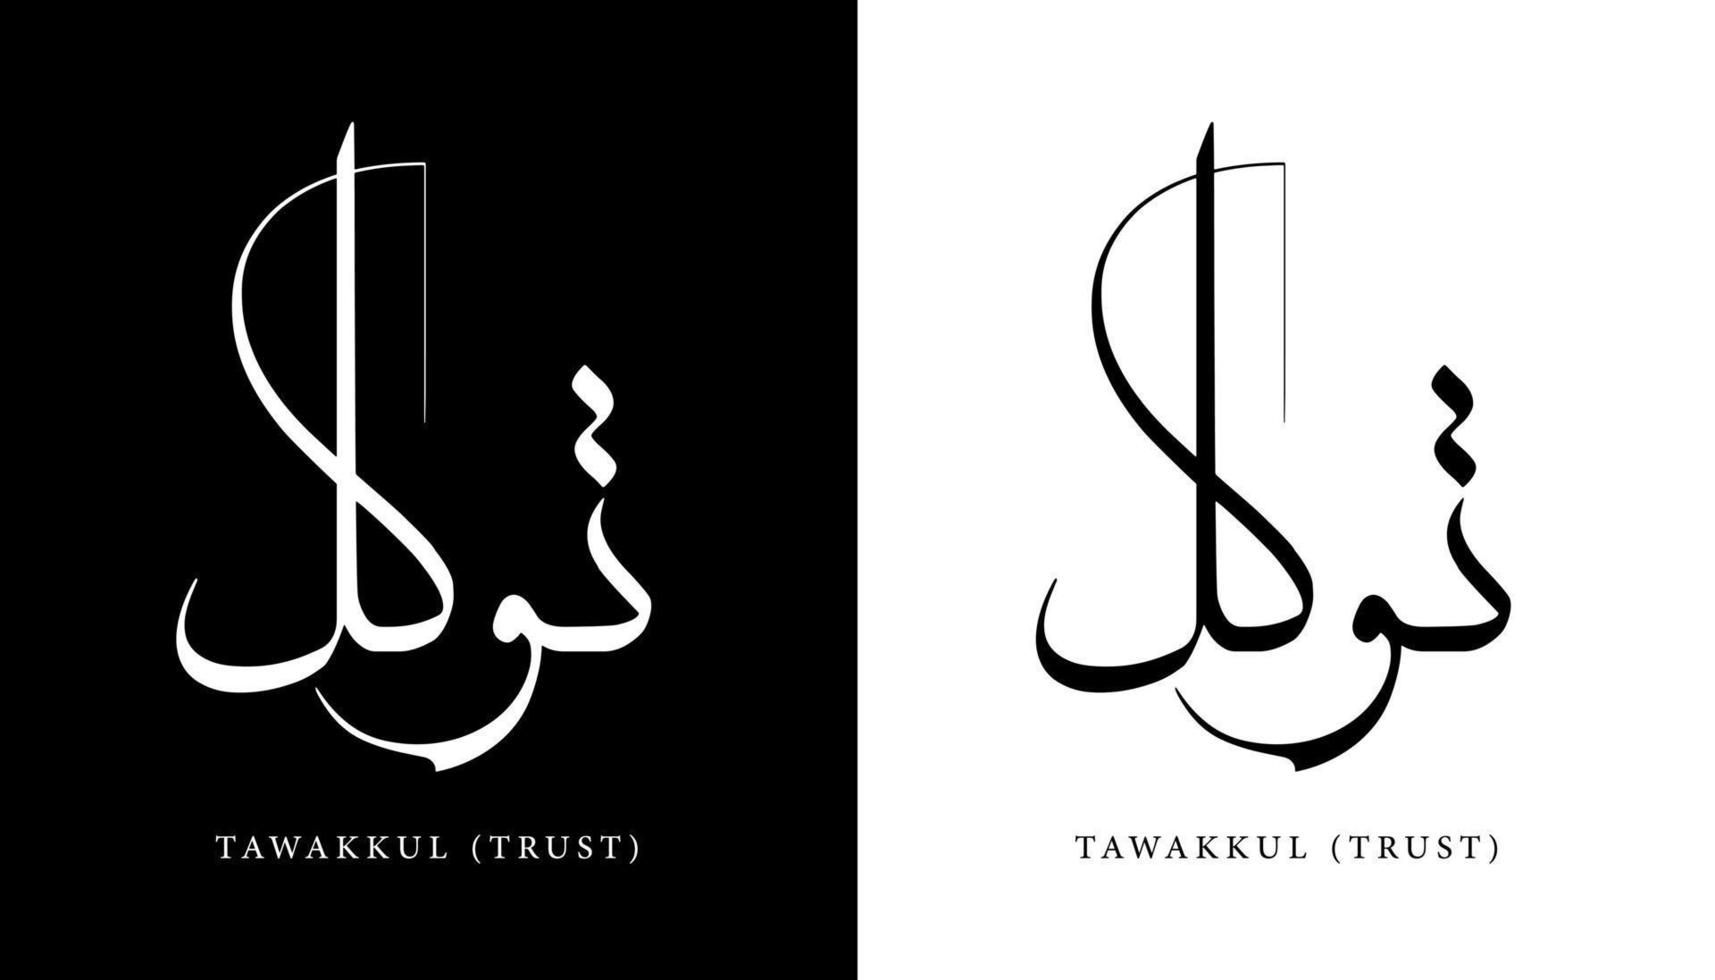 nome di calligrafia araba tradotto 'tawakkul - fiducia' lettere arabe alfabeto font lettering logo islamico illustrazione vettoriale